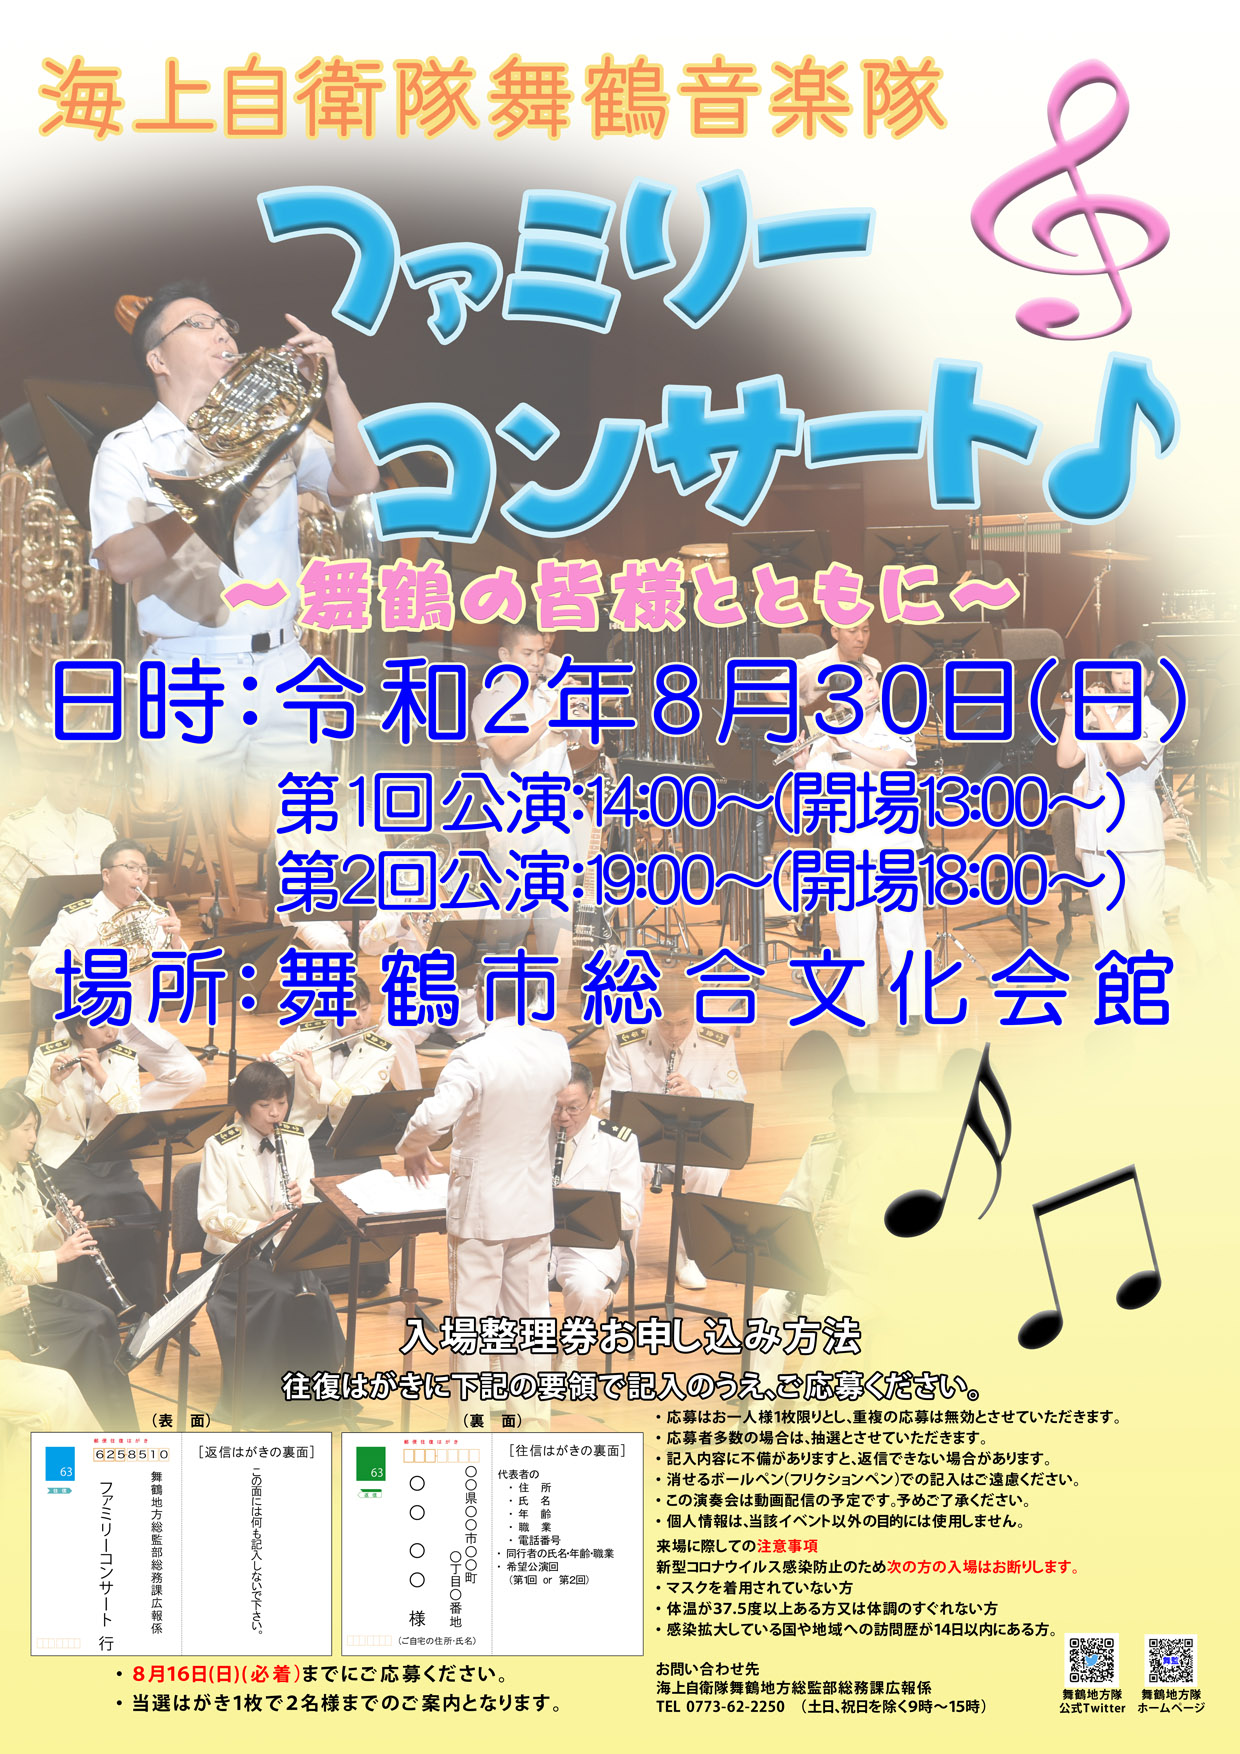 海上自衛隊 舞鶴音楽隊 ファミリーコンサート2020ポスター